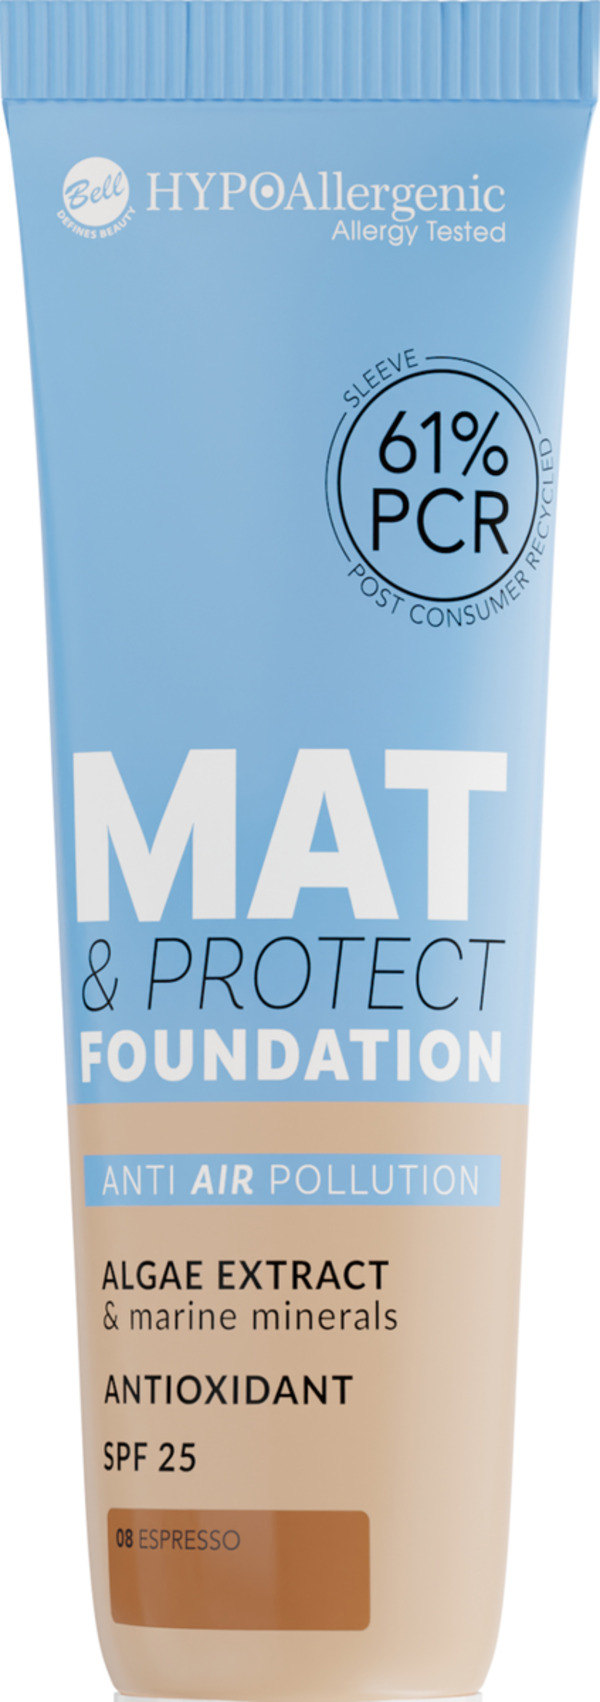 Bild 1 von HYPOAllergenic Mat & Protect Foundation SPF 25 08 Espresso, 30 g